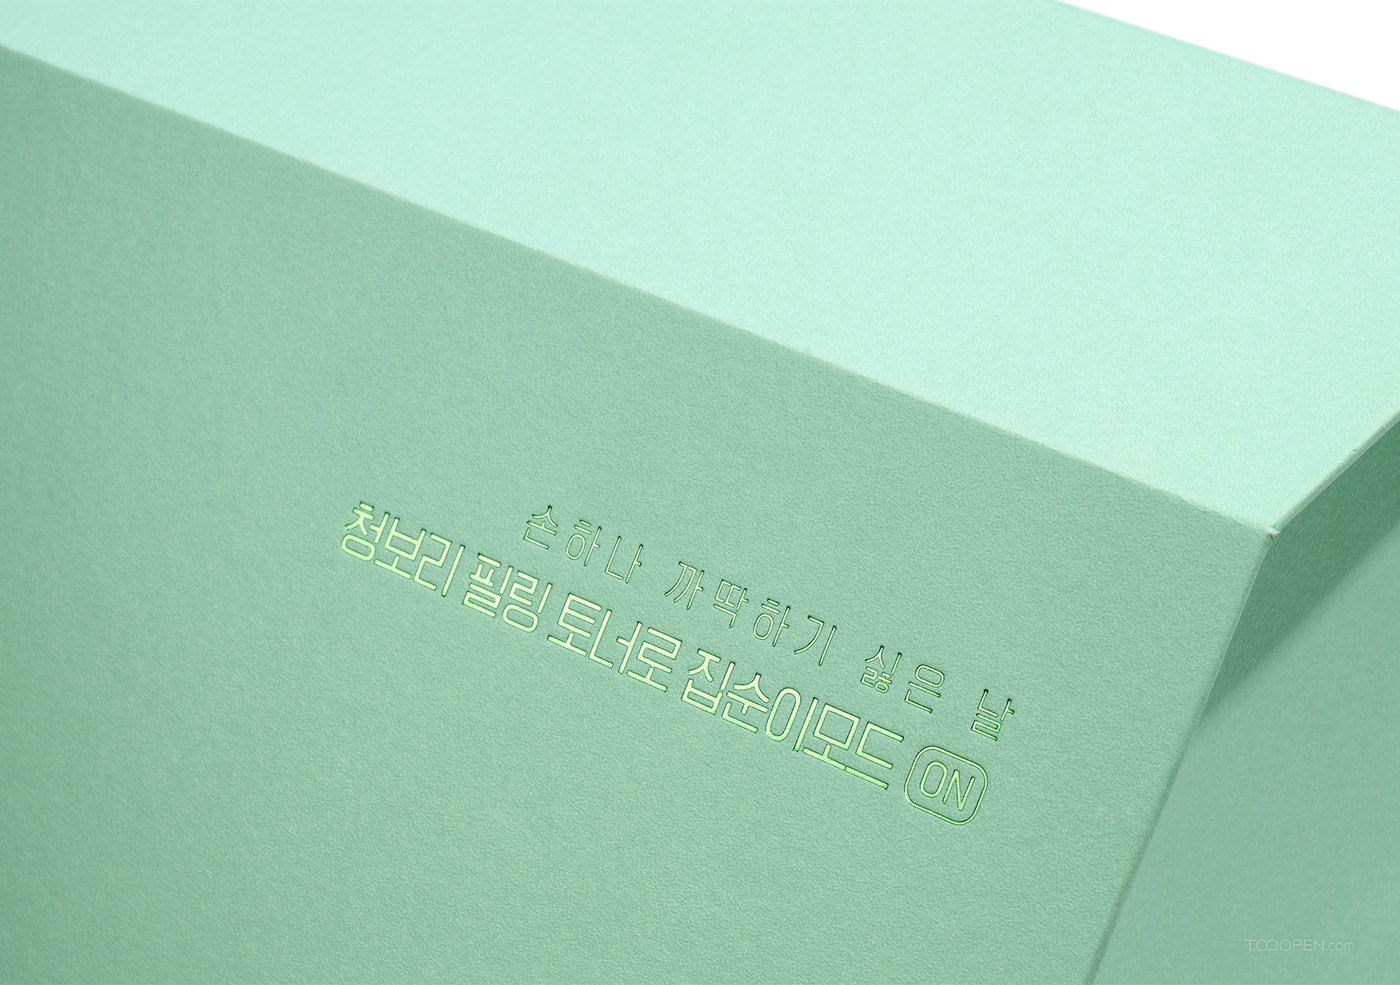 韩国悦诗风吟绿茶限量新包装设计作品欣赏-05